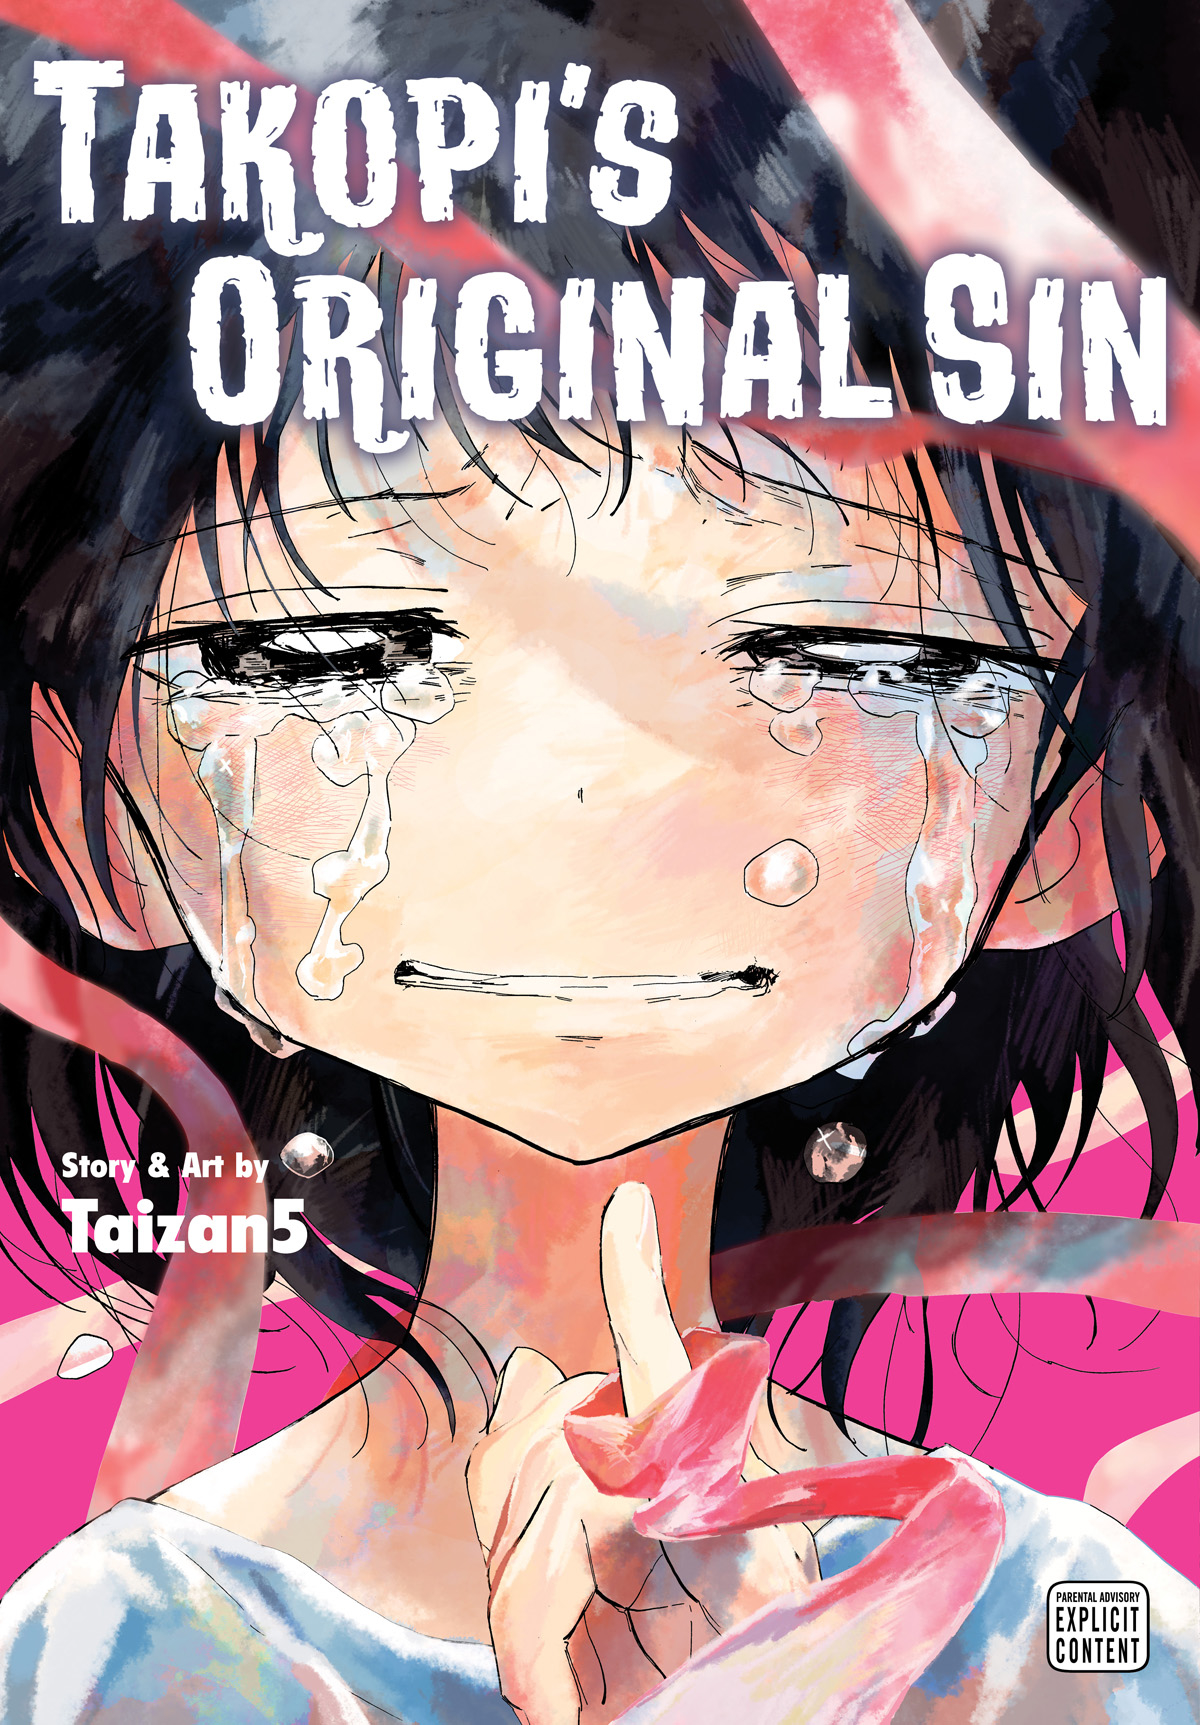 Takopis Original Sin Manga